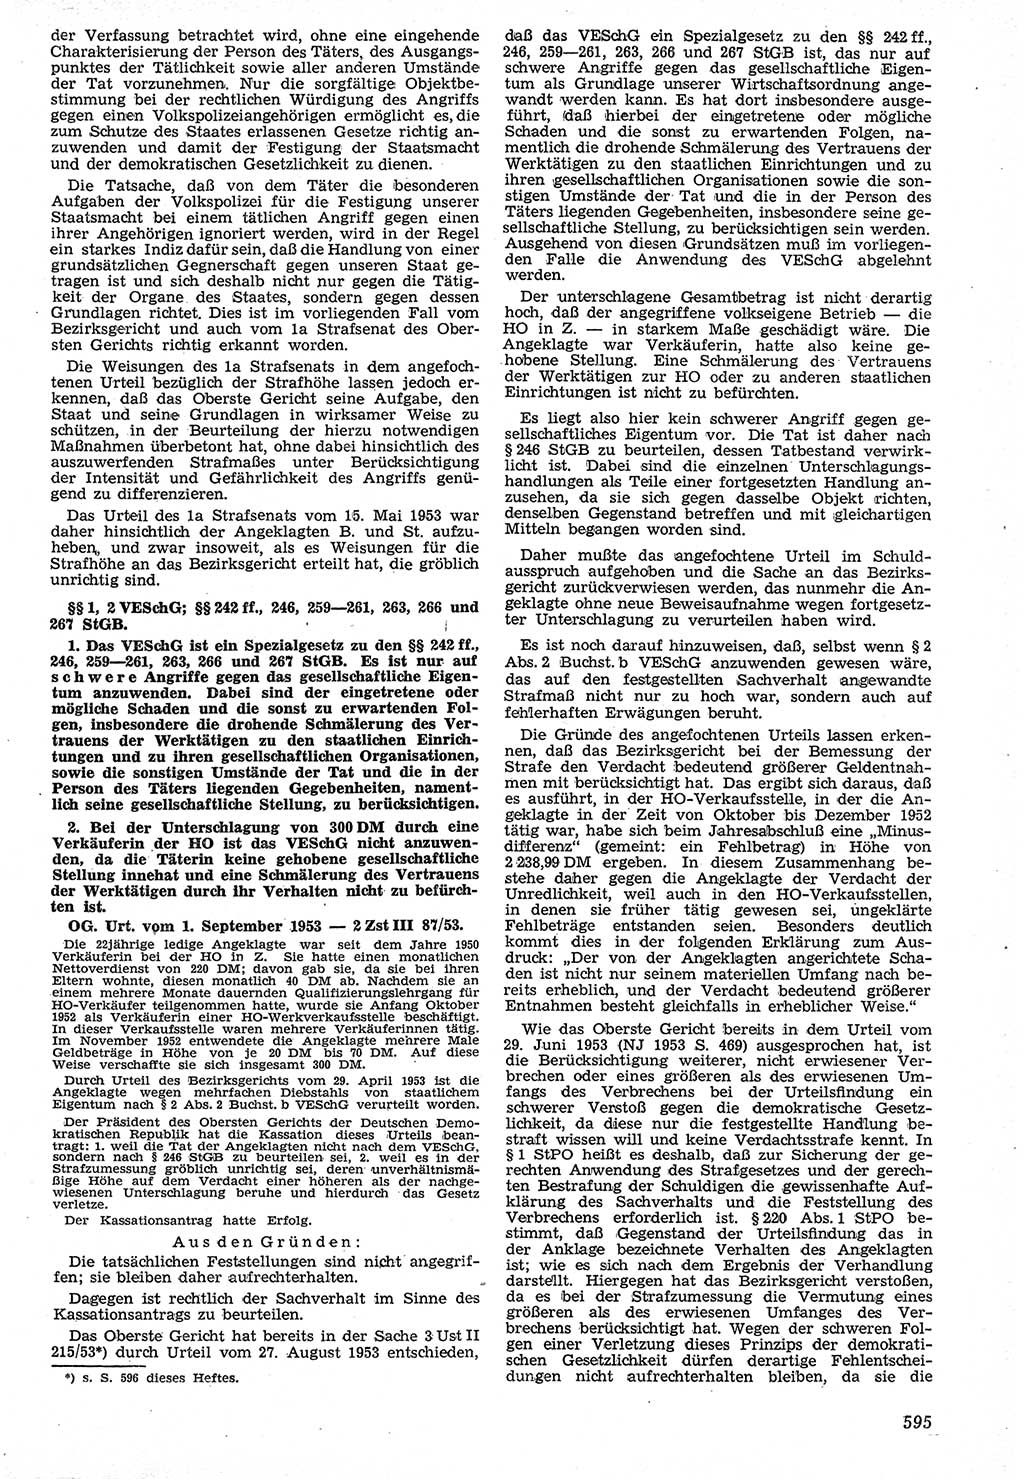 Neue Justiz (NJ), Zeitschrift für Recht und Rechtswissenschaft [Deutsche Demokratische Republik (DDR)], 7. Jahrgang 1953, Seite 595 (NJ DDR 1953, S. 595)